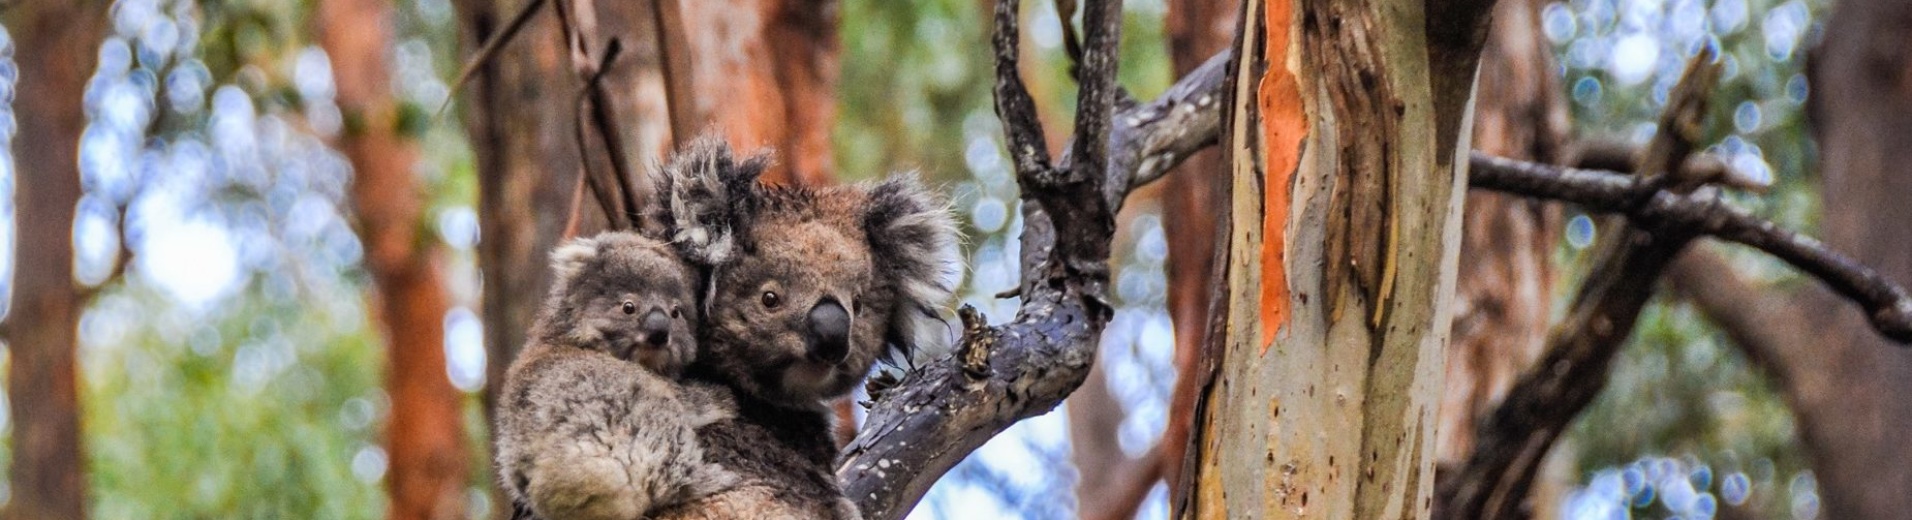 Kaolas maman et bébé sur un arbre Australie